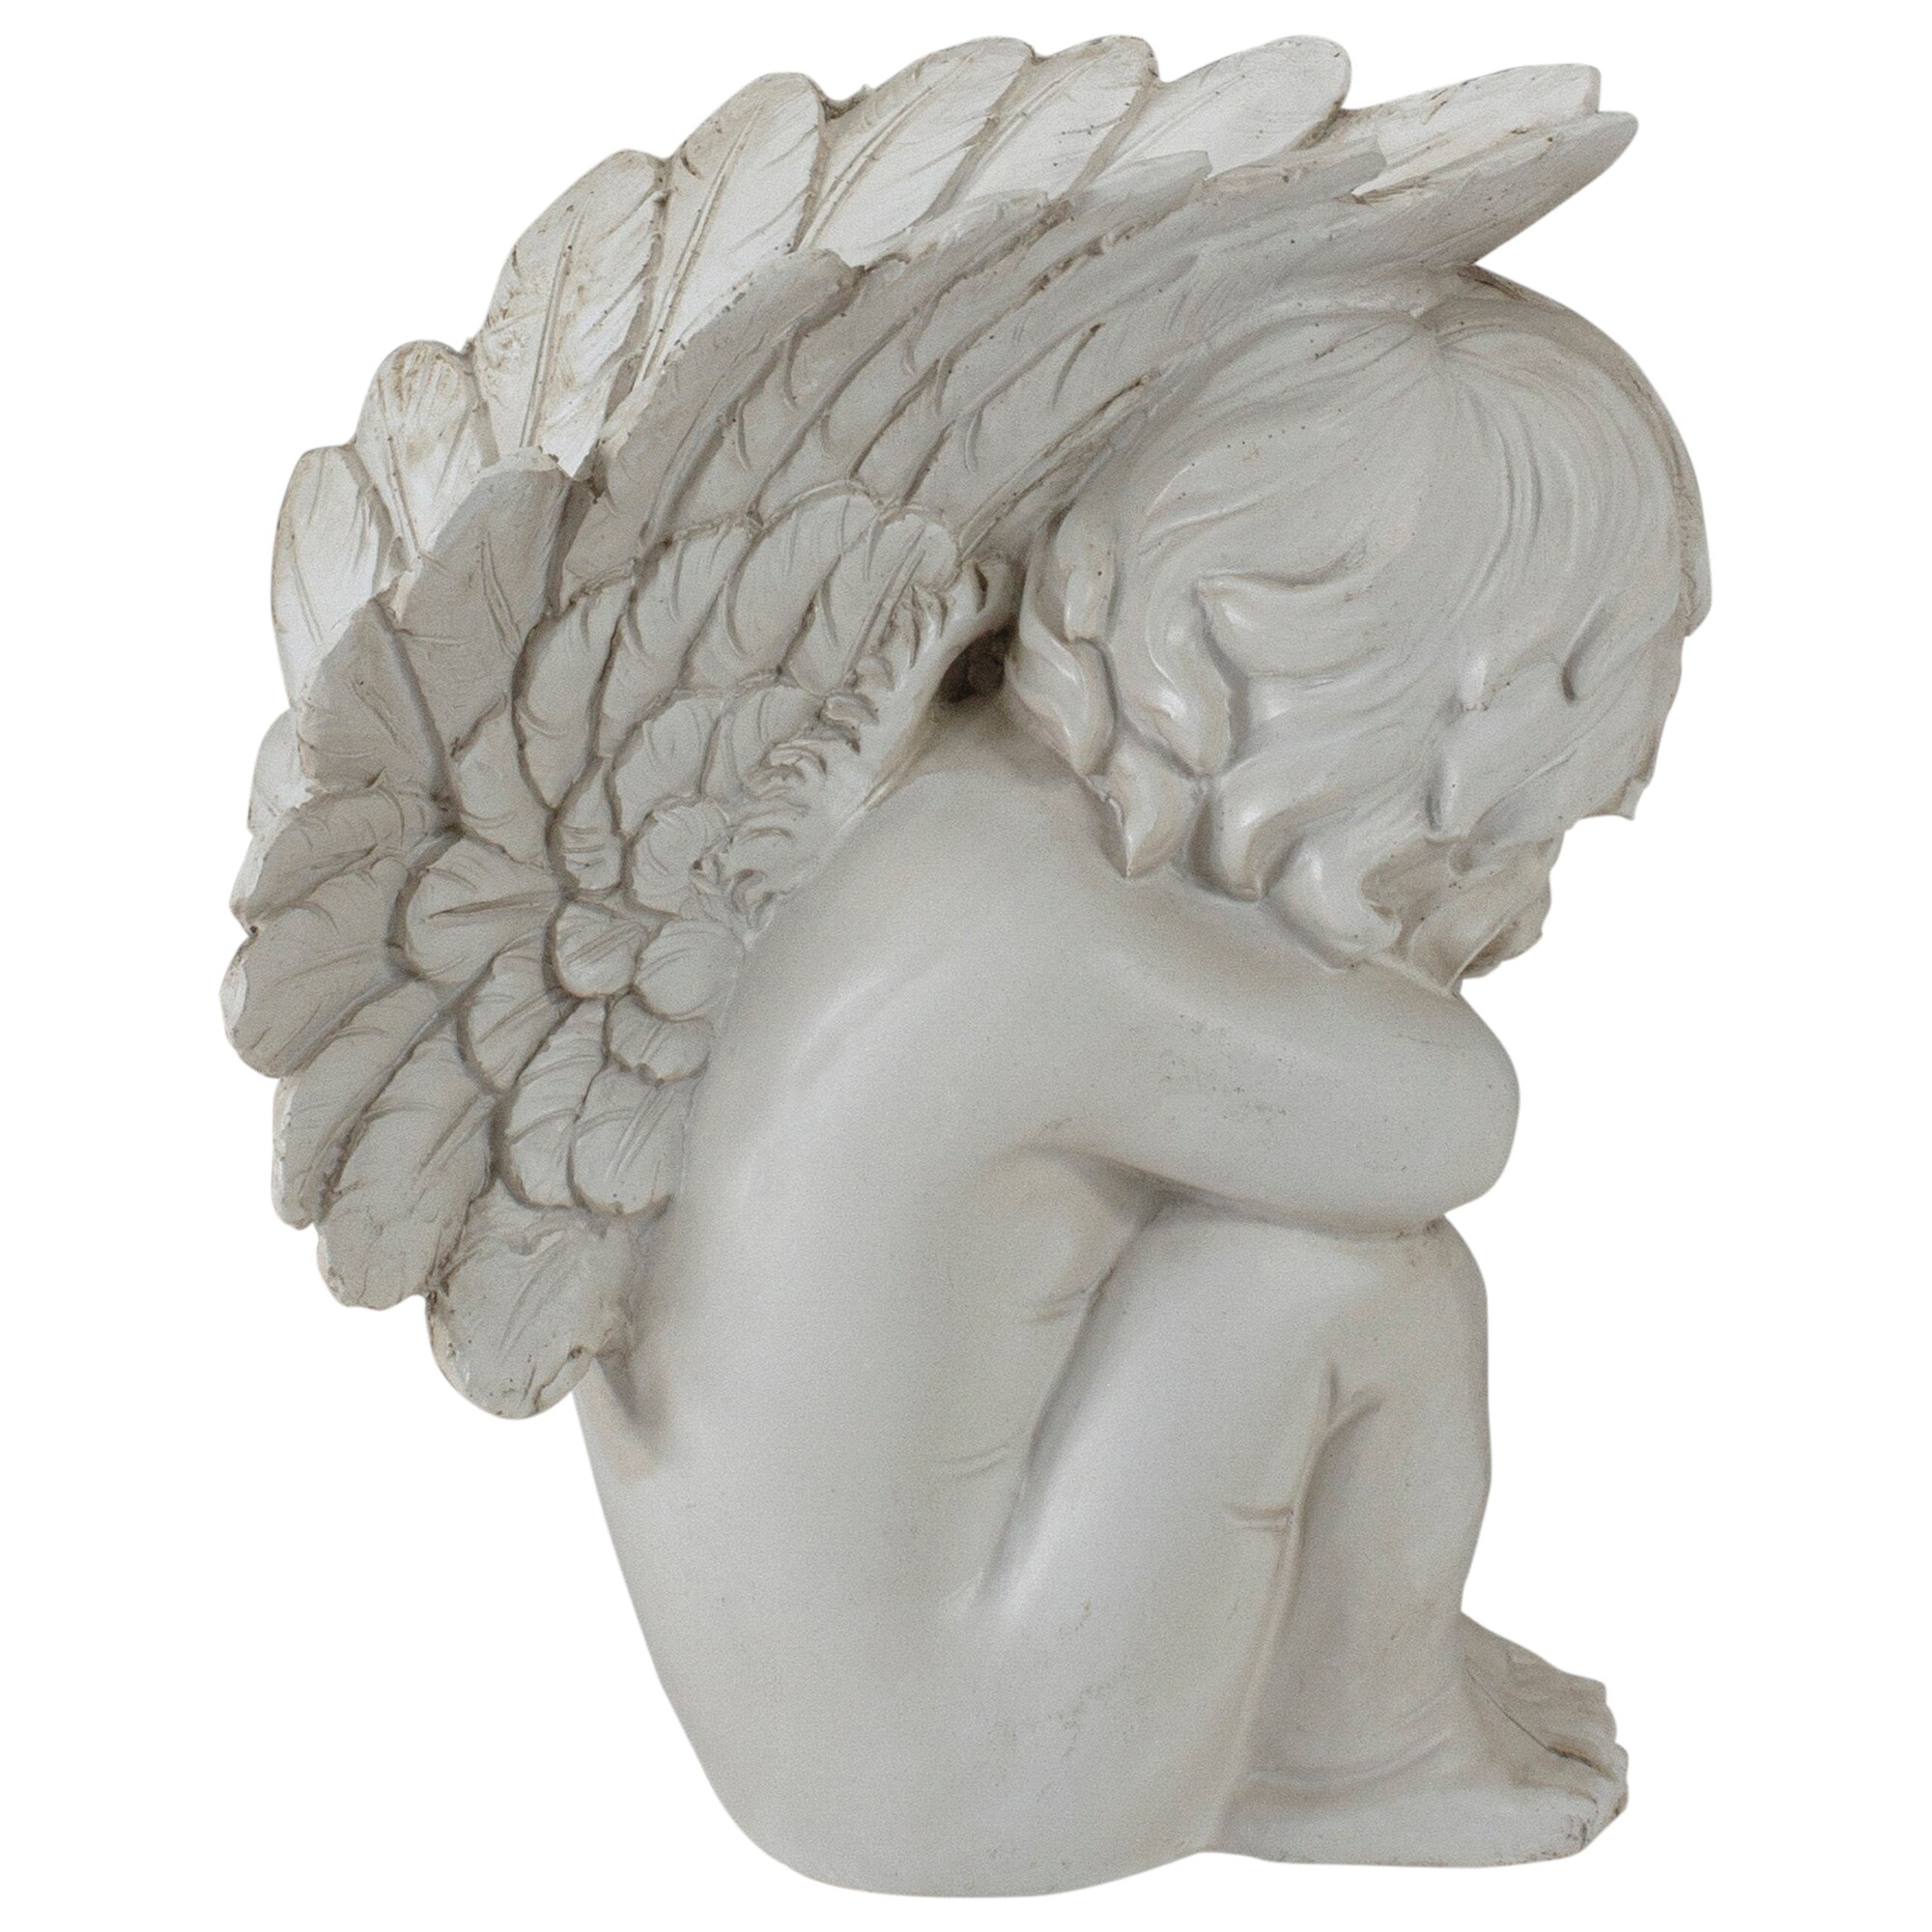 7.5" Ivory Left Facing Sleeping Cherub Angel Outdoor Garden Statue - image 4 of 5